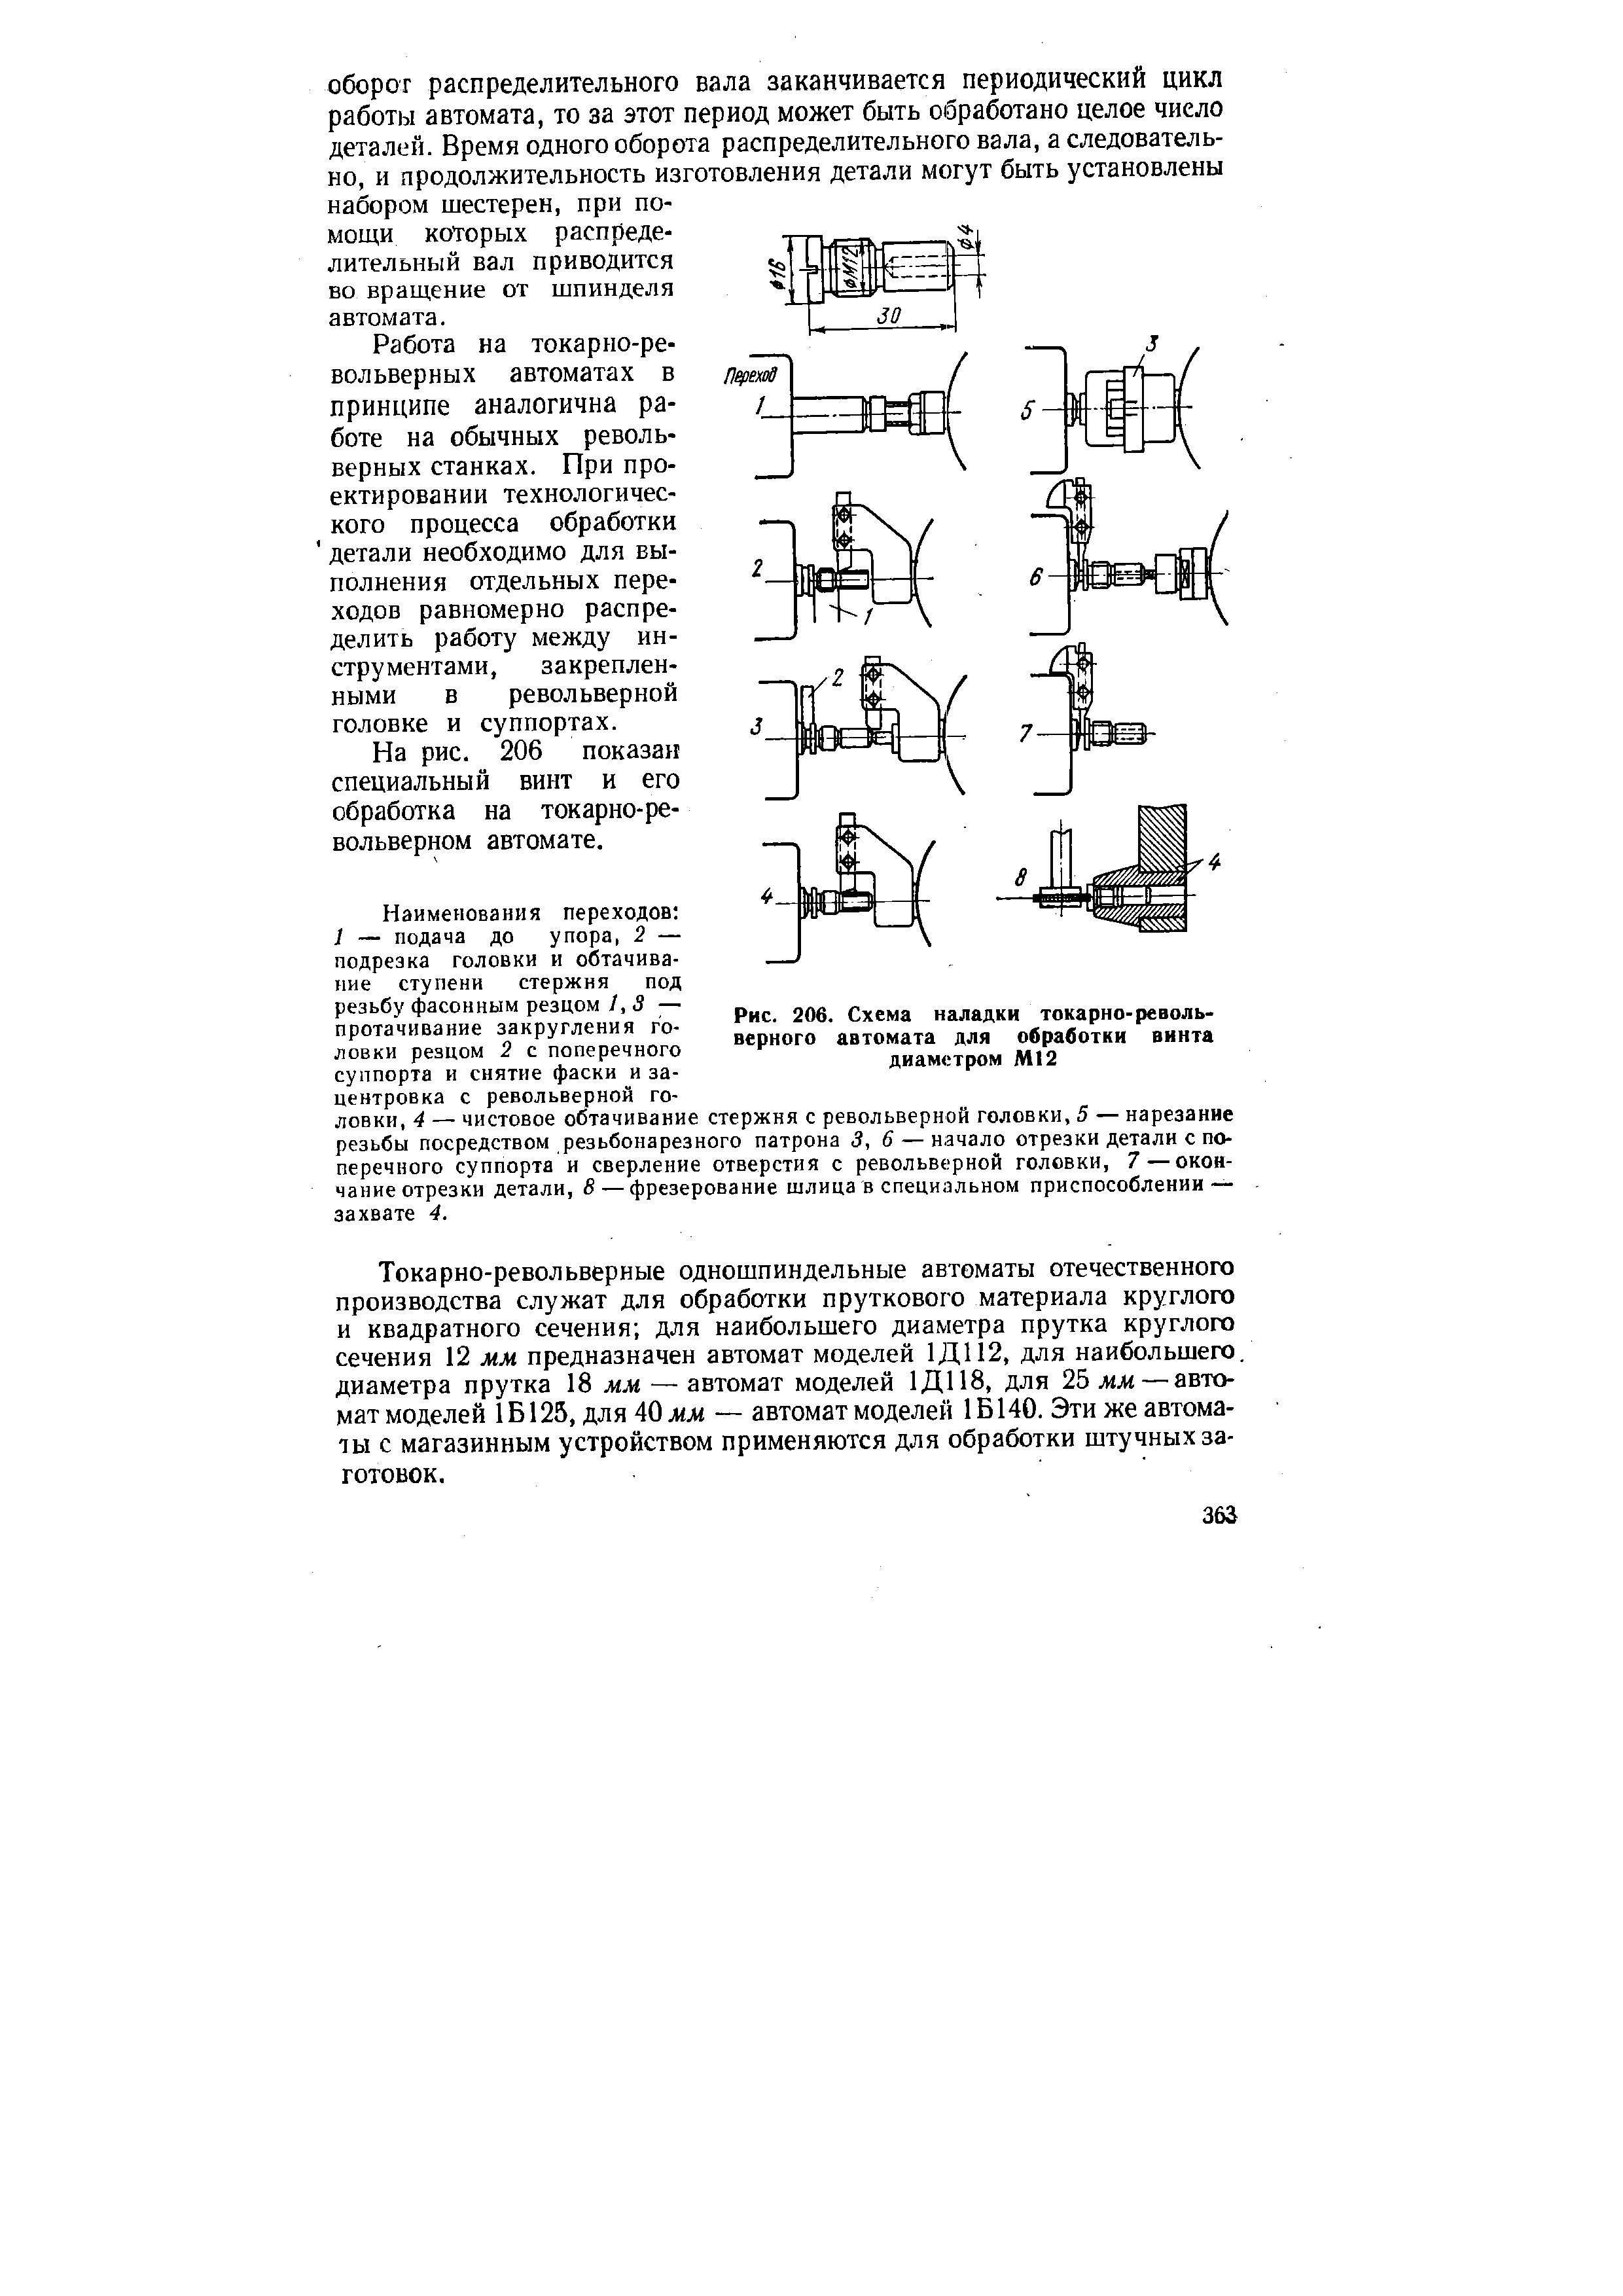 Рис. 206. Схема наладки токарно-револьверного автомата для обработки вннта диаметром М12
